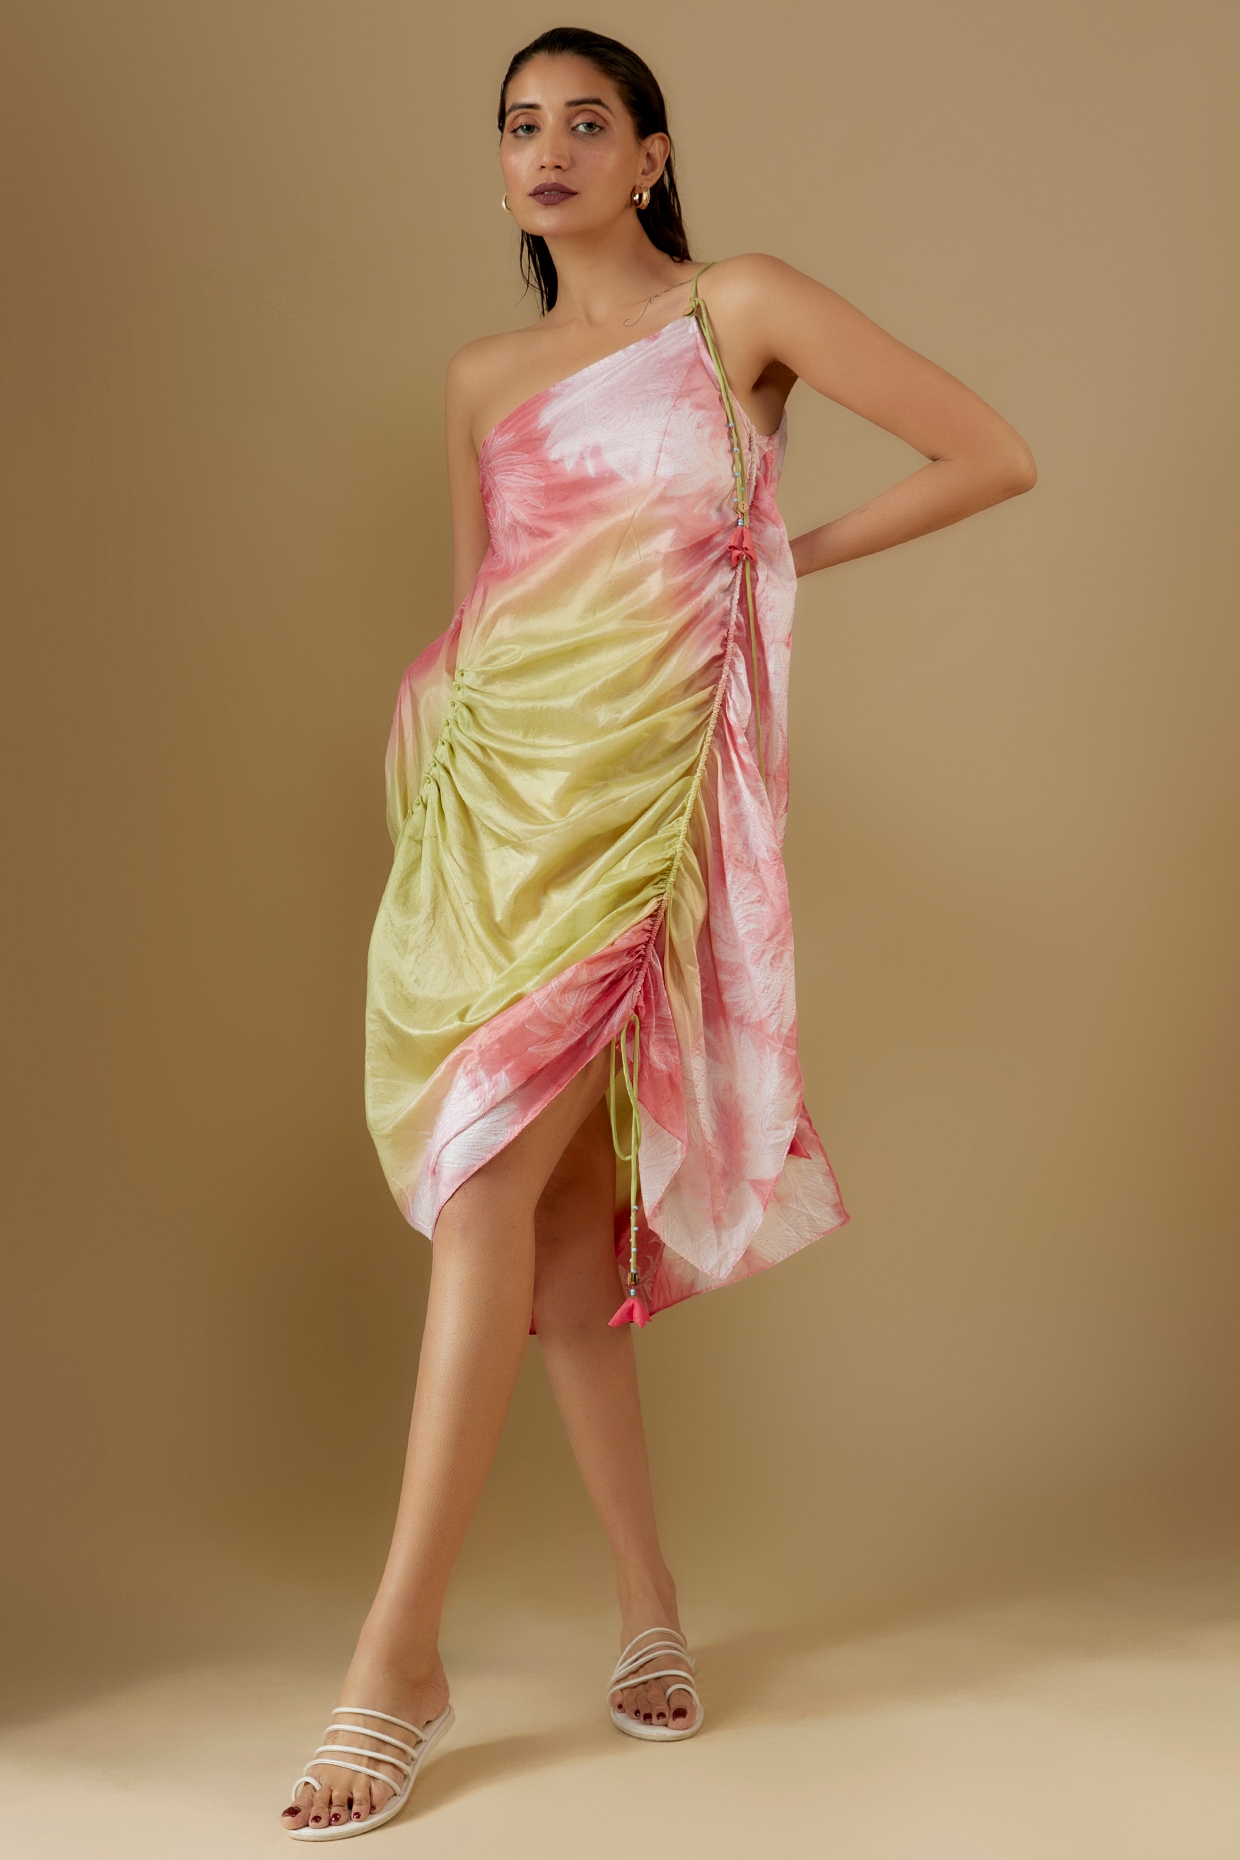 Haldi Dress Archive - Utsav Fashion Blog